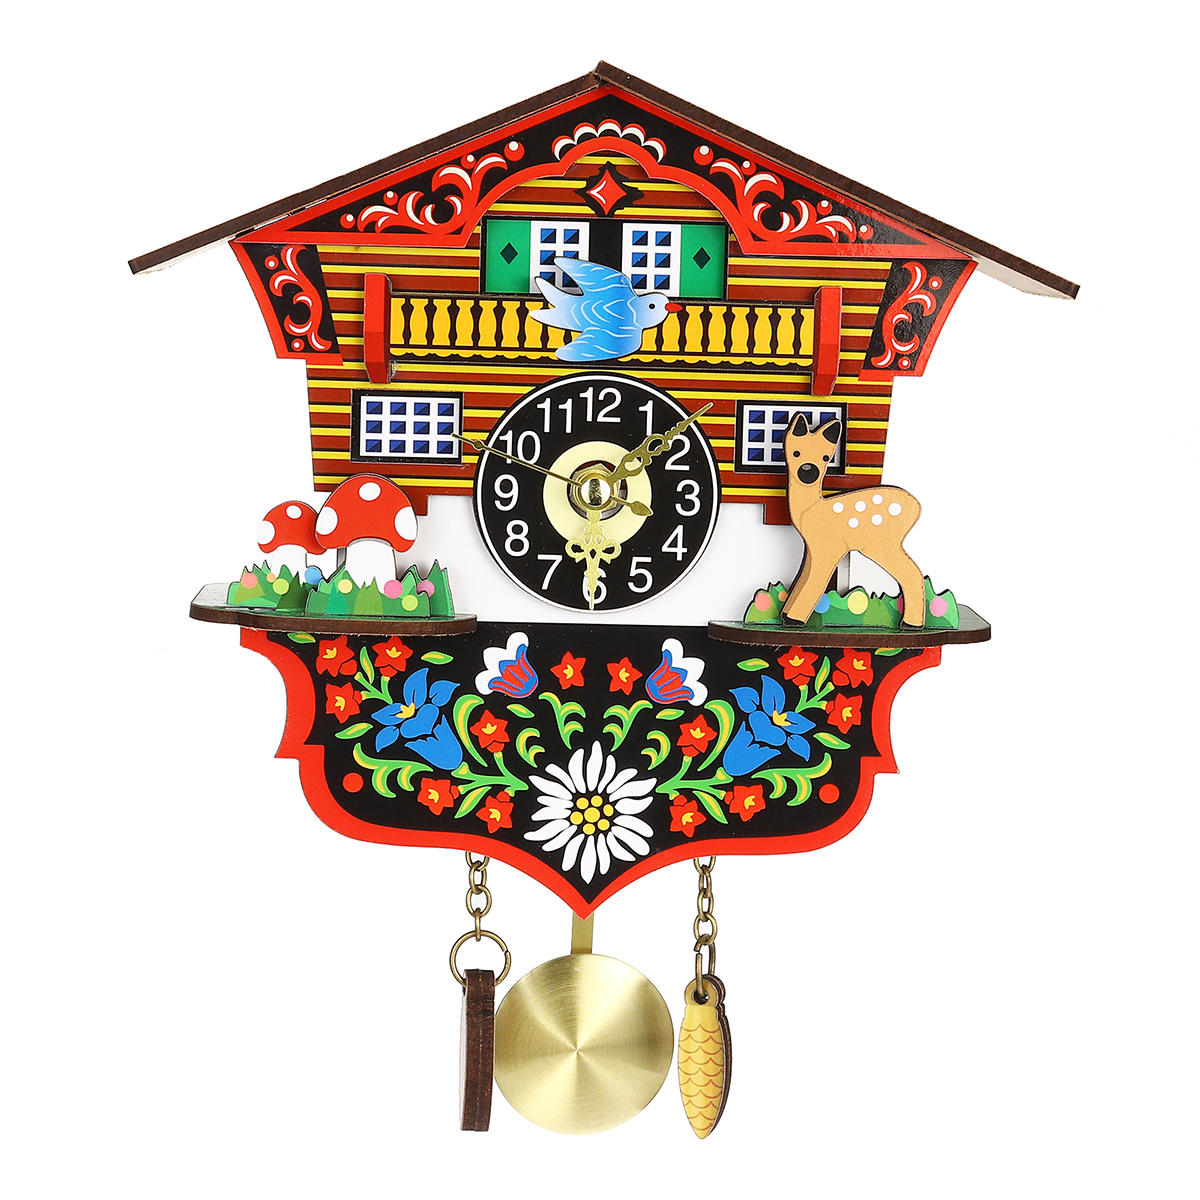 

KB-002 Деревянная кукушка Часы 3D Качели Часы Мультипликационная стена Часы Bird Time Bell Alarm Alarm Watch